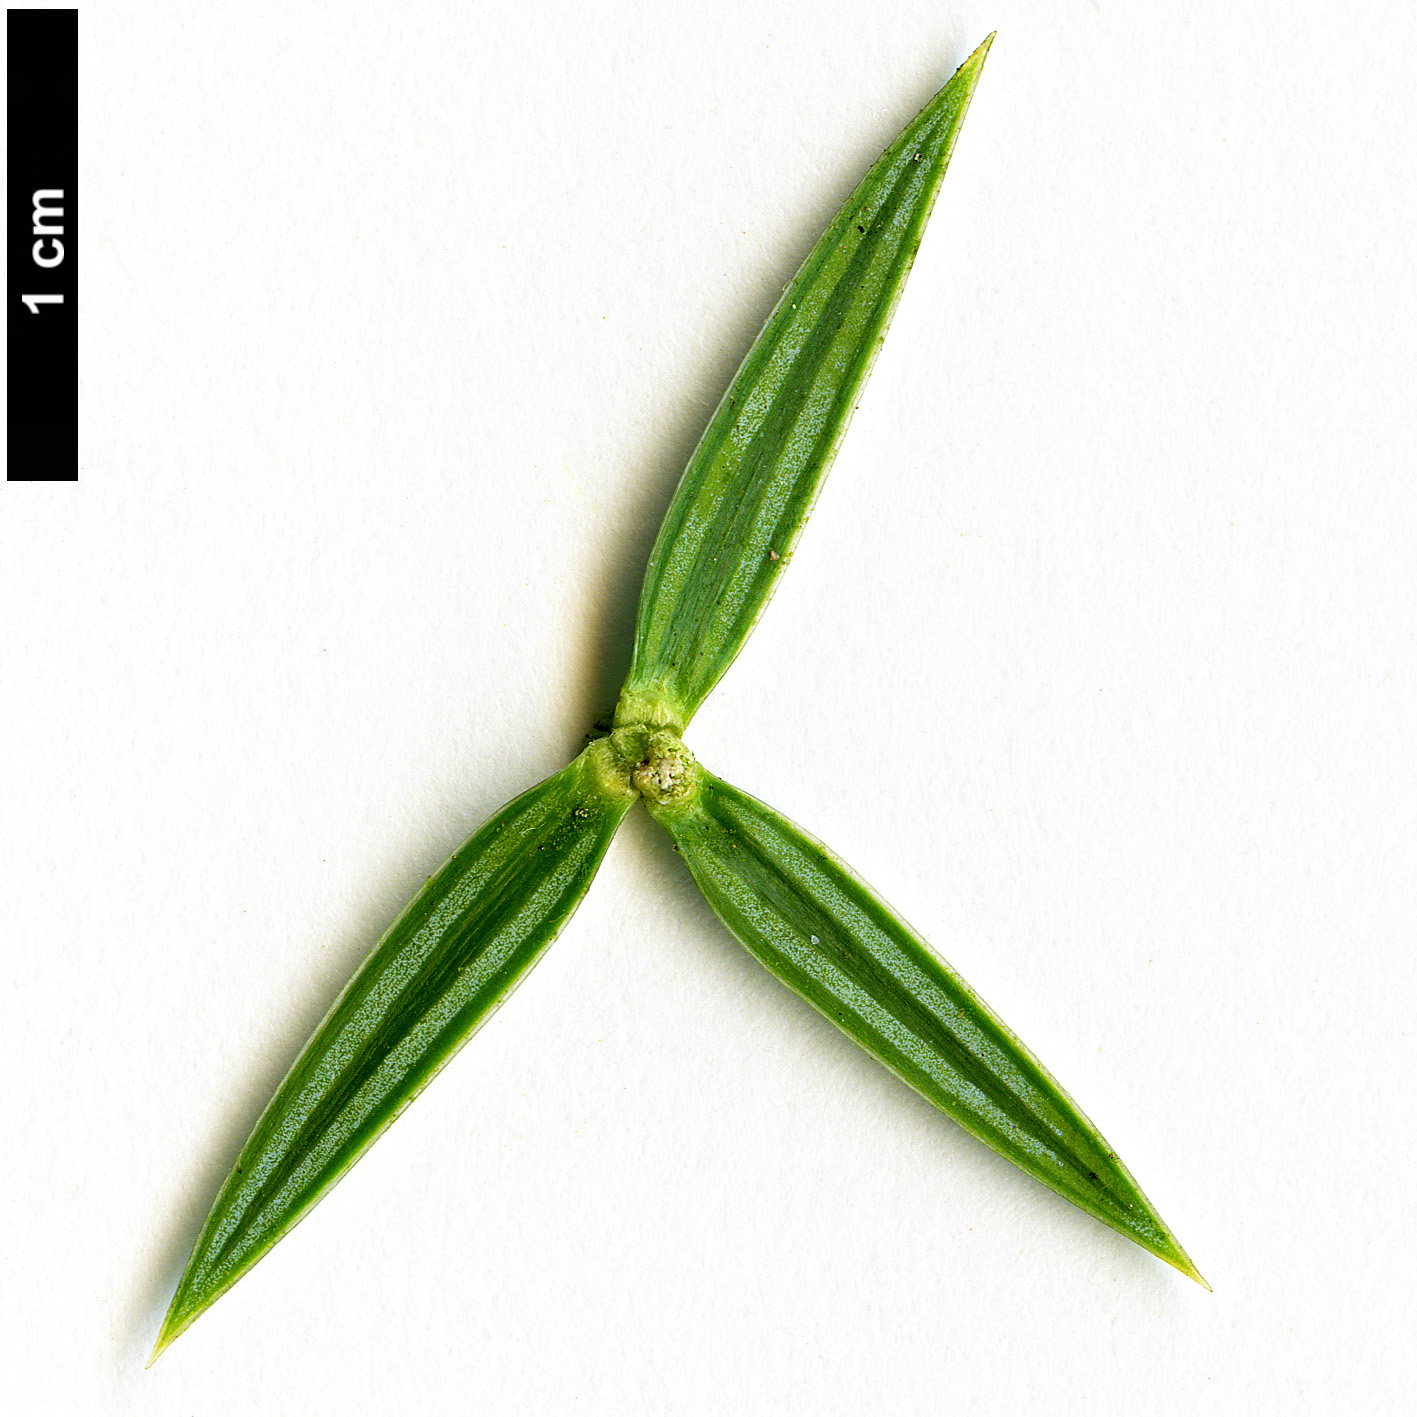 High resolution image: Family: Cupressaceae - Genus: Juniperus - Taxon: drupacea